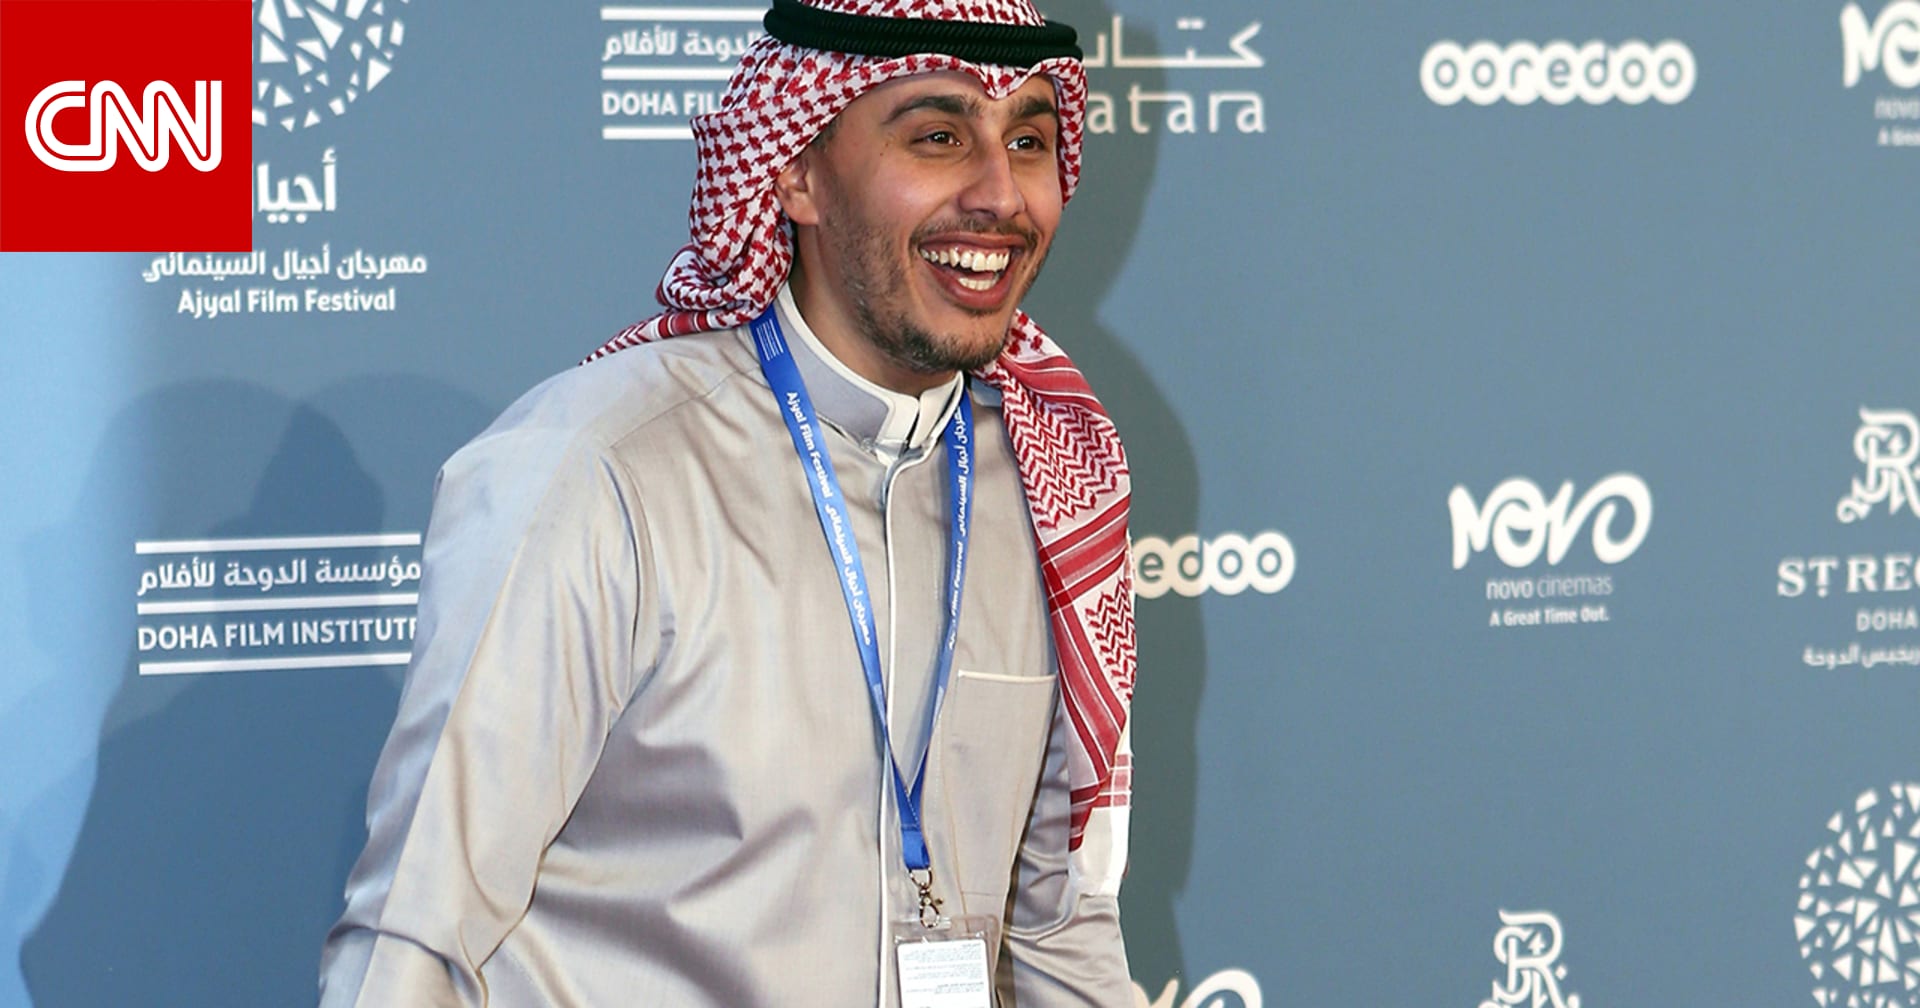 الإعلامي الكويتي شعيب راشد يرد على دعوات سعودية لمقاطعته: الذباب  لا يهش ولا ينش  - CNN Arabic